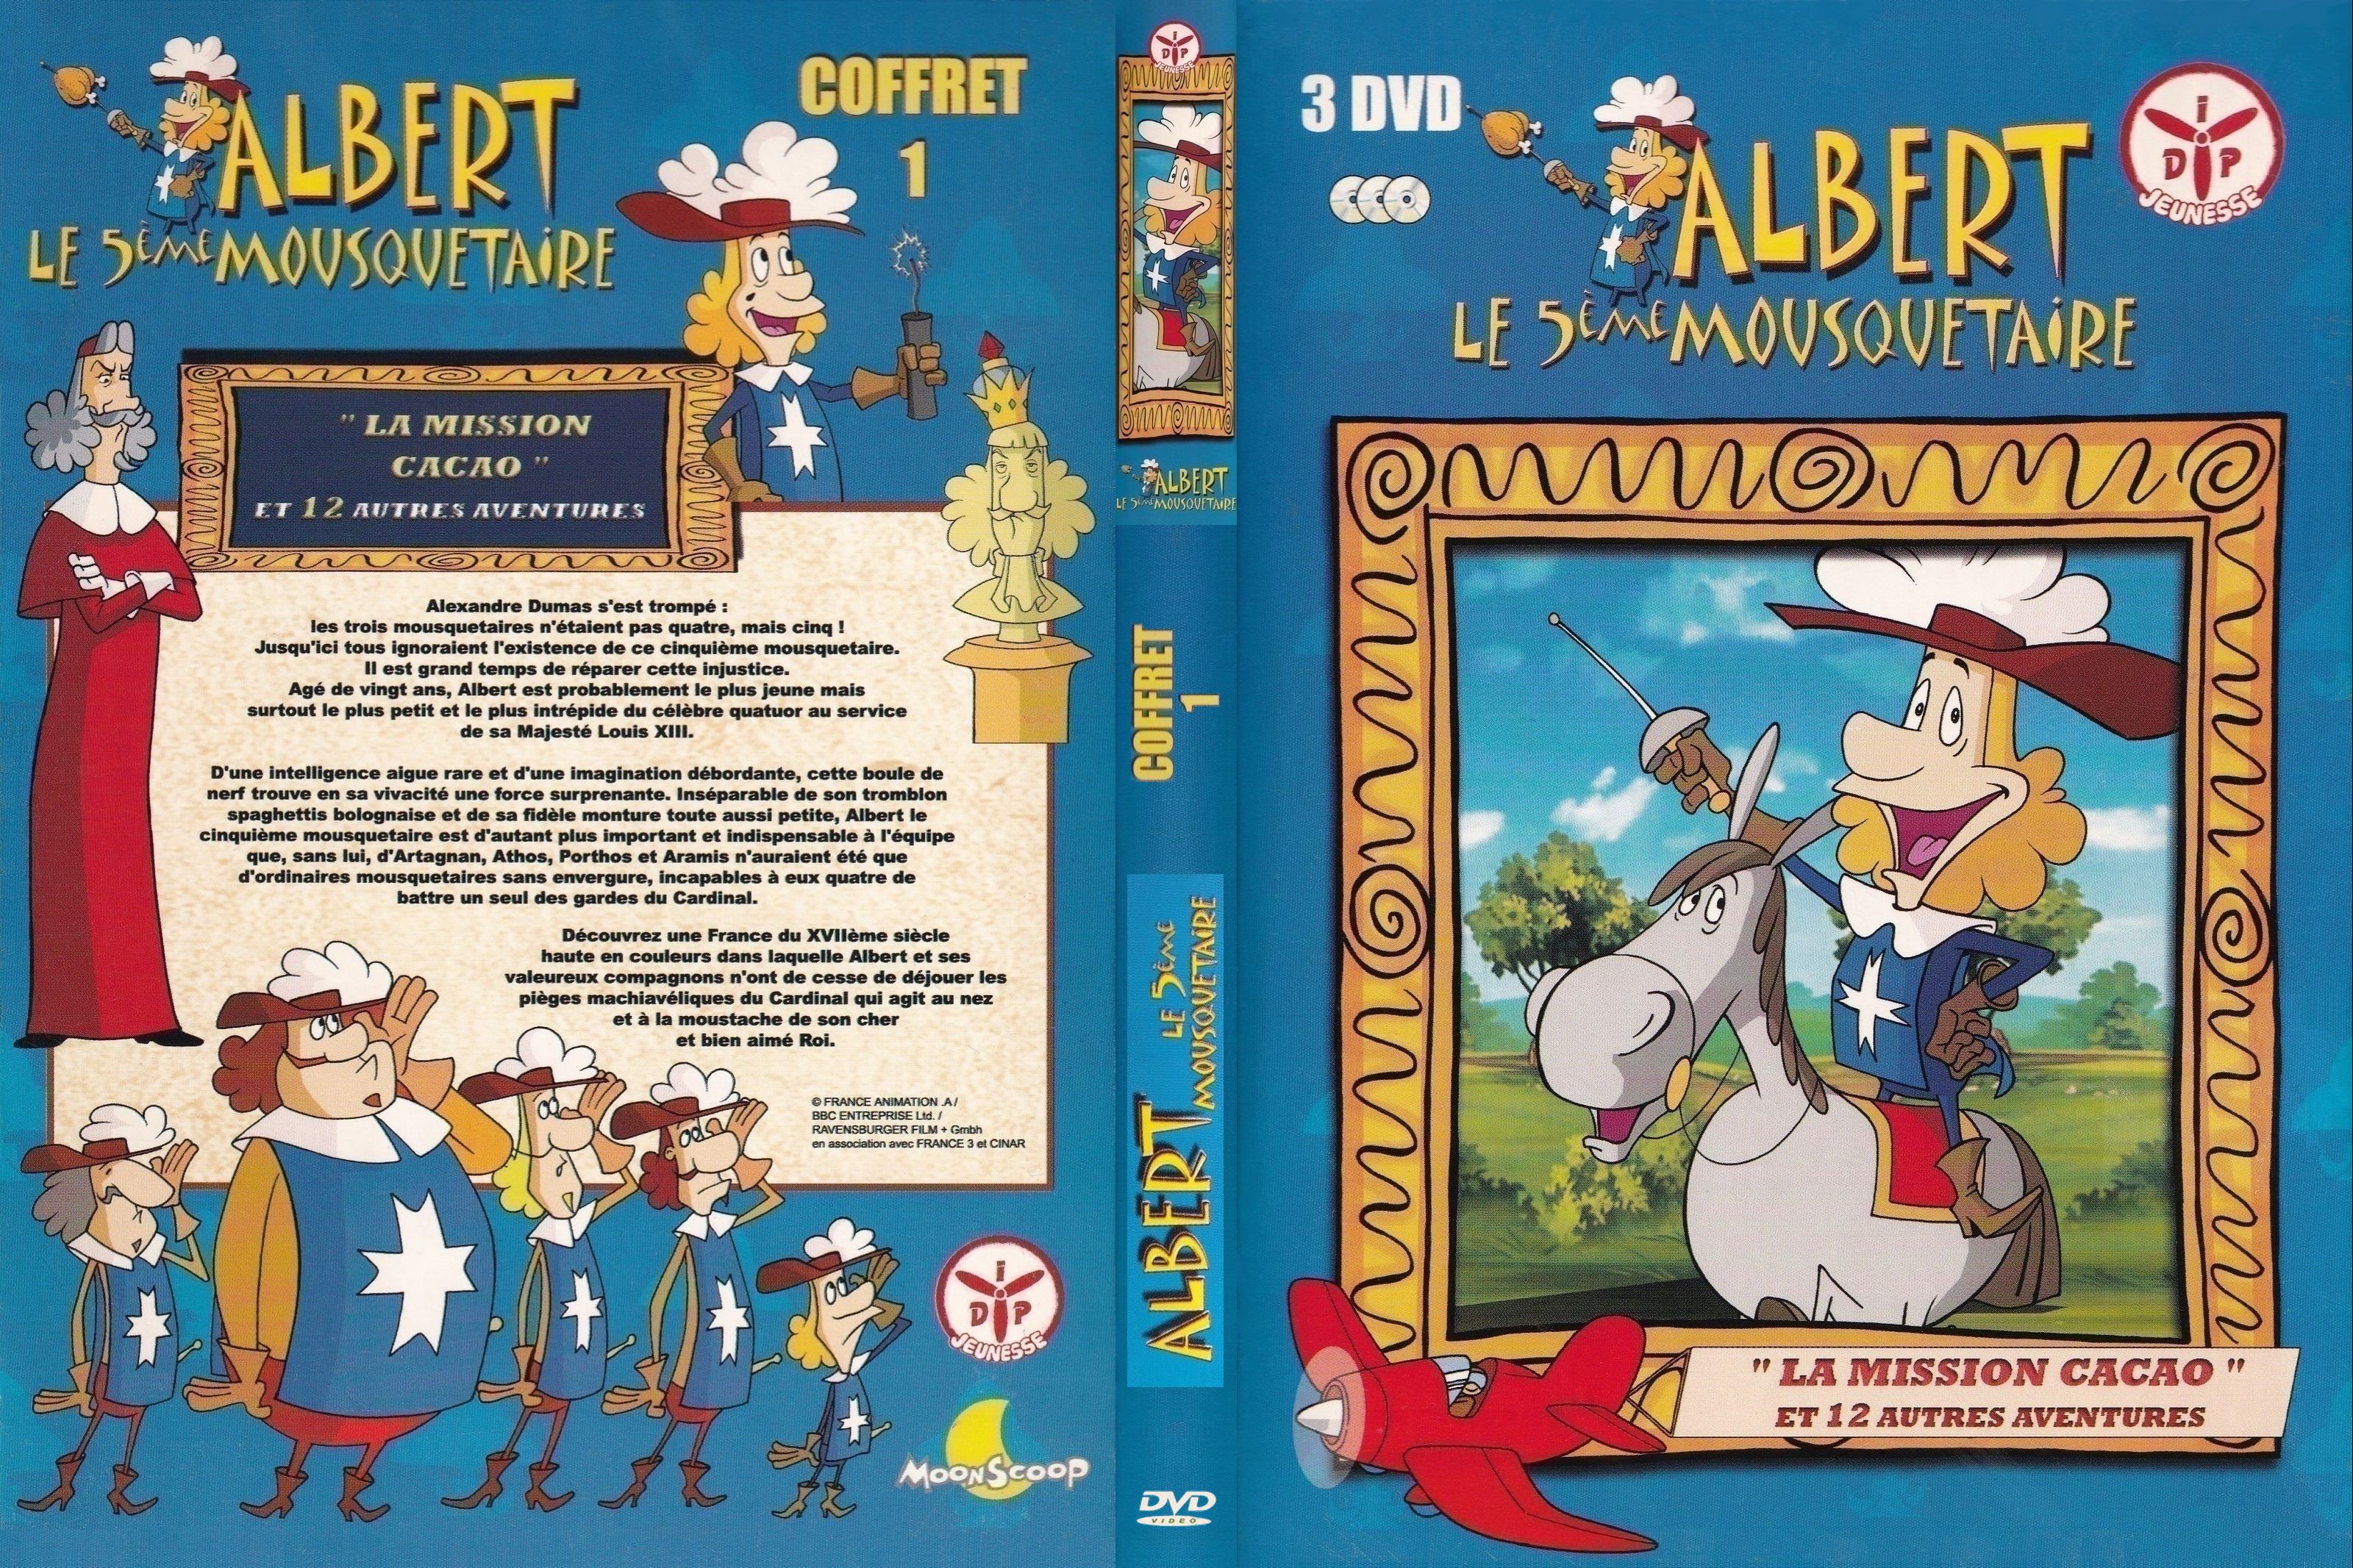 Jaquette DVD Albert le 5 me mousquetaire COFFRET 1